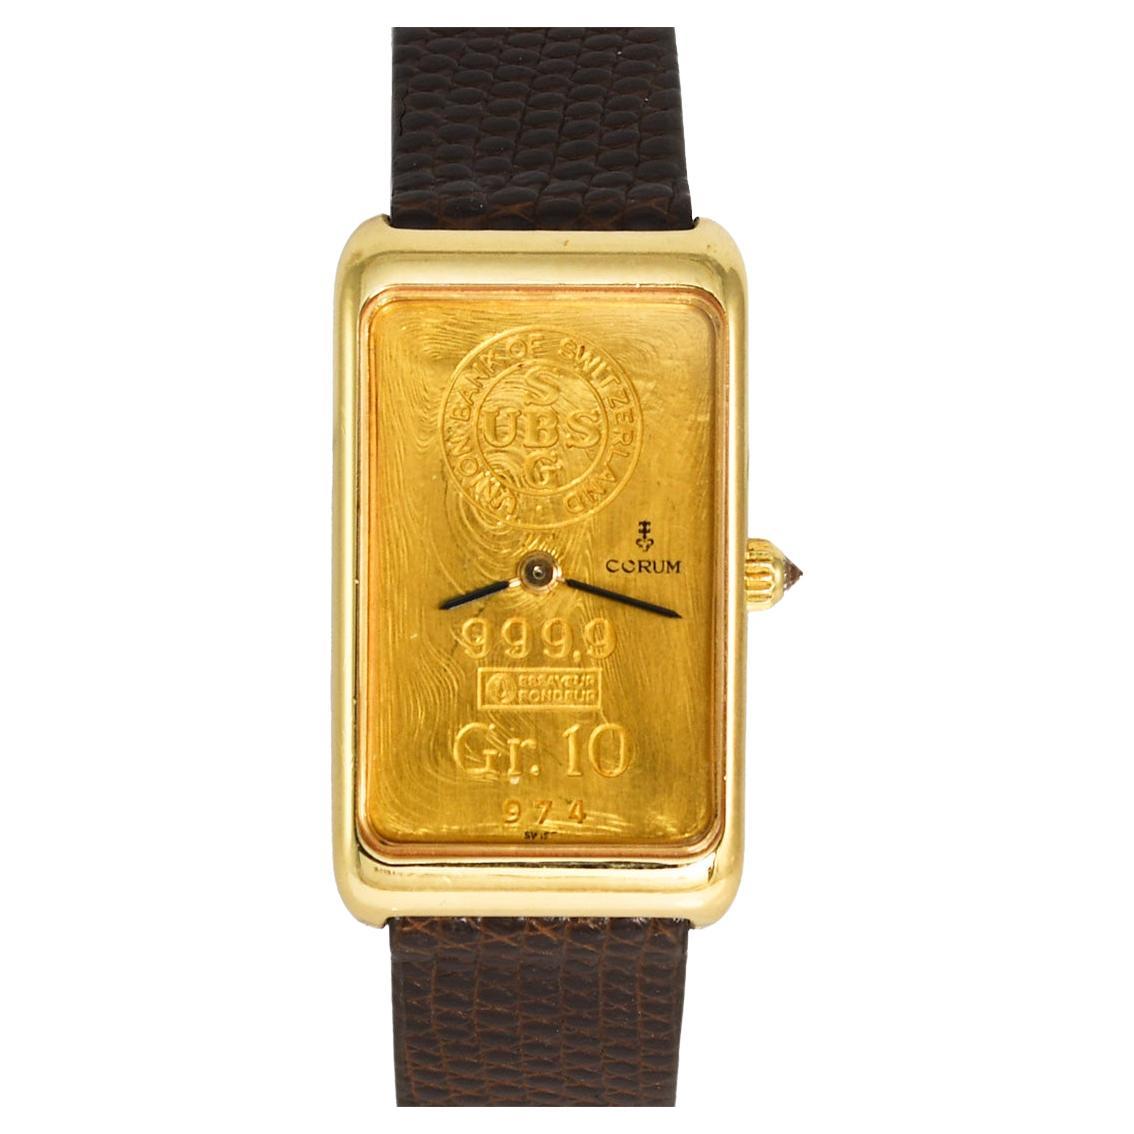 18K Yellow Gold Corum Ingot Watch 10g